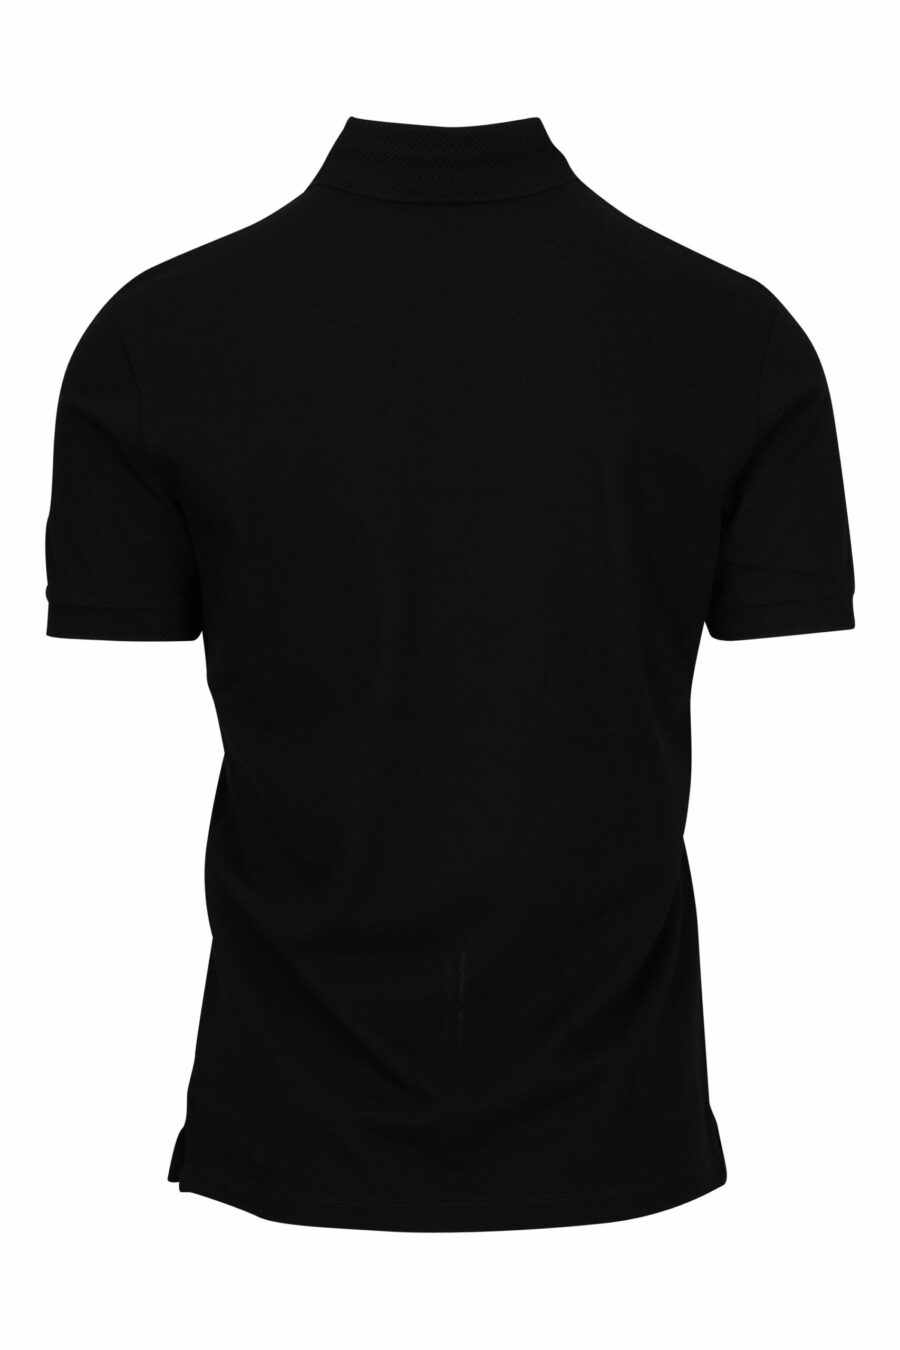 Black polo shirt with eagle mini logo - 8057970491989 1 scaled